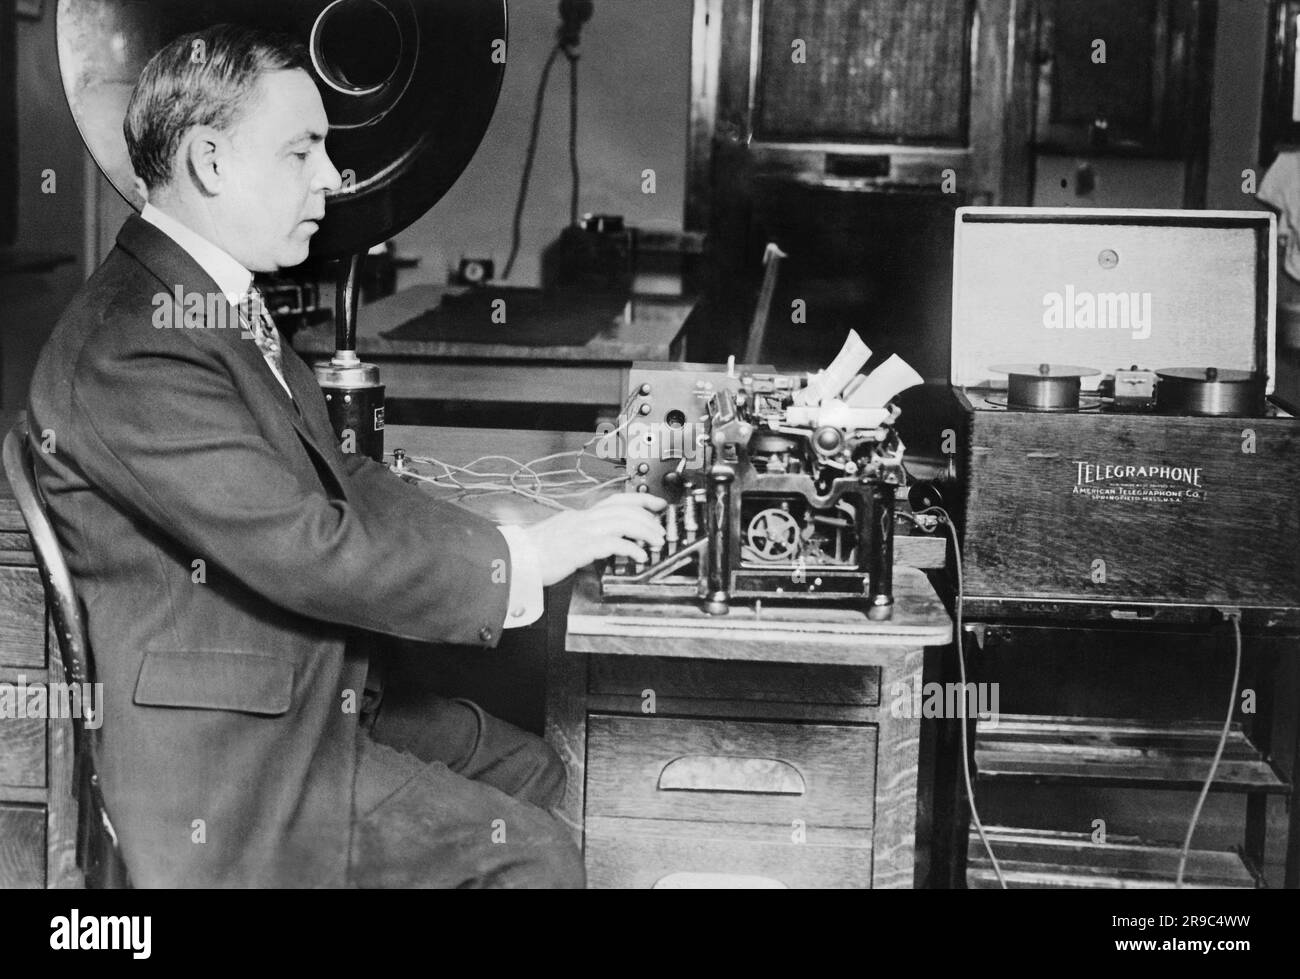 Washington, D.C.: 11. Mai 1922 H.P. O'Reilly schreibt eine schriftliche Version von Präsident Hardings Eröffnungsrede, die auf einem Telegrafon aufgezeichnet wurde. Das ist eine neue Erfindung, bei der zehn Meilen Stahldraht verwendet werden, um die Sprache aufzunehmen und sie dann durch eine Reproduktionsmaschine abzuspielen. Stockfoto